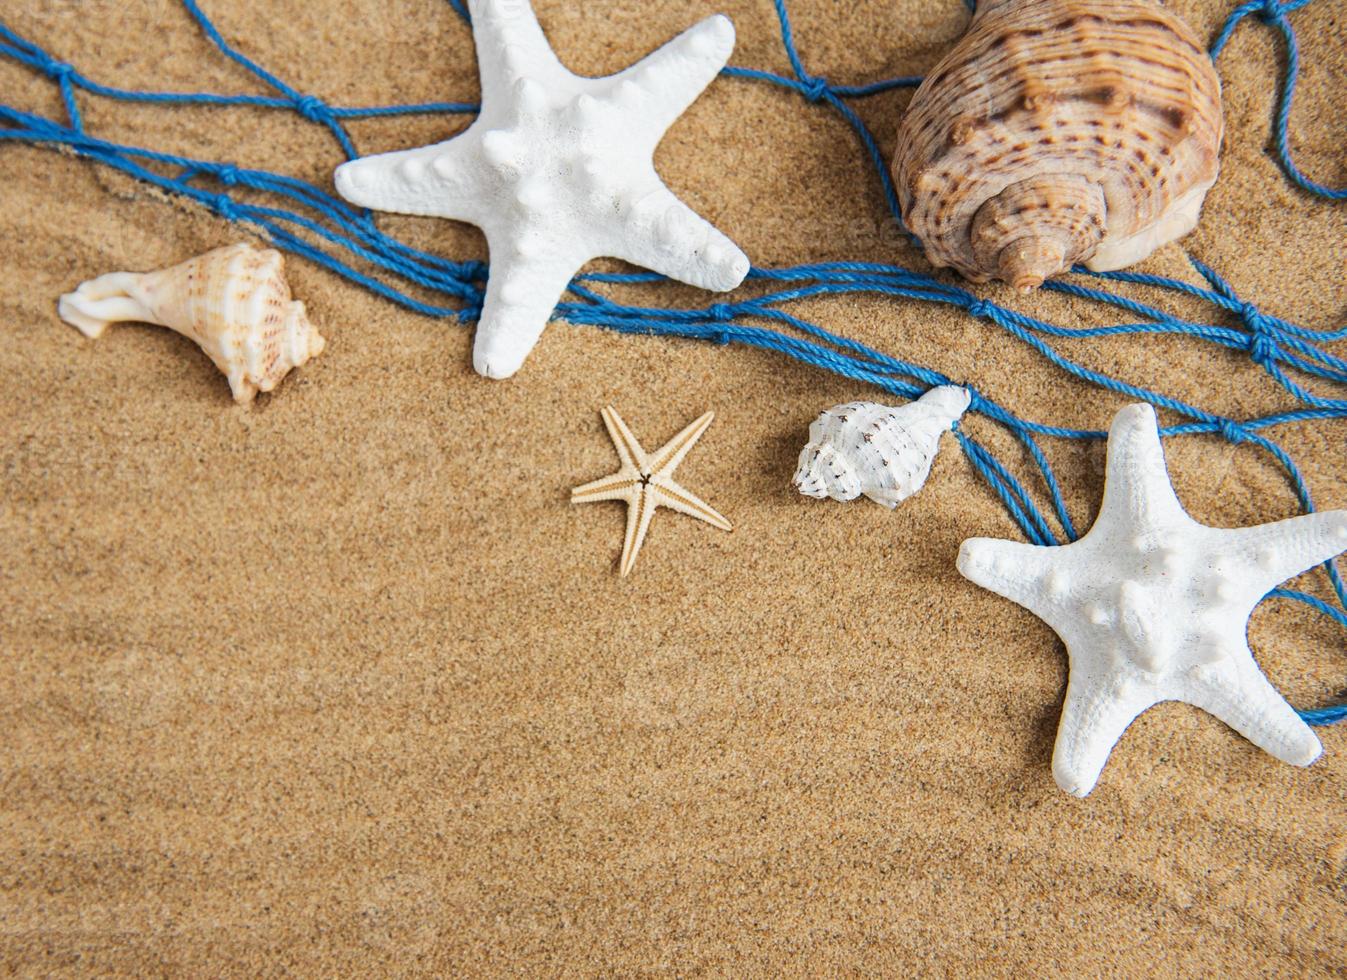 Shells, starfish and fishing net on the beach - Starfish